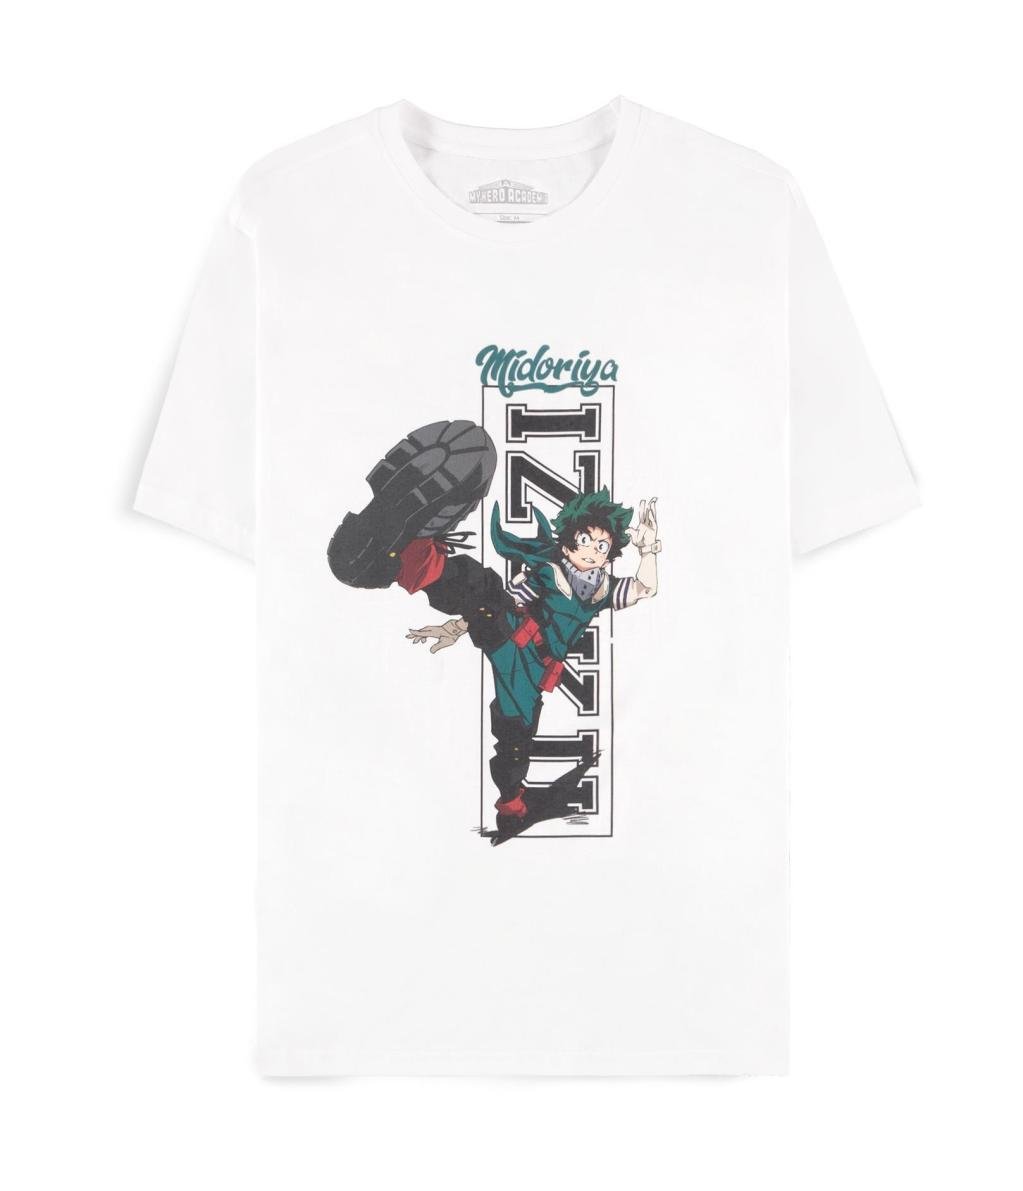 MY HERO ACADEMIA - Izuku Midoriya - Men's T-shirt (XS)